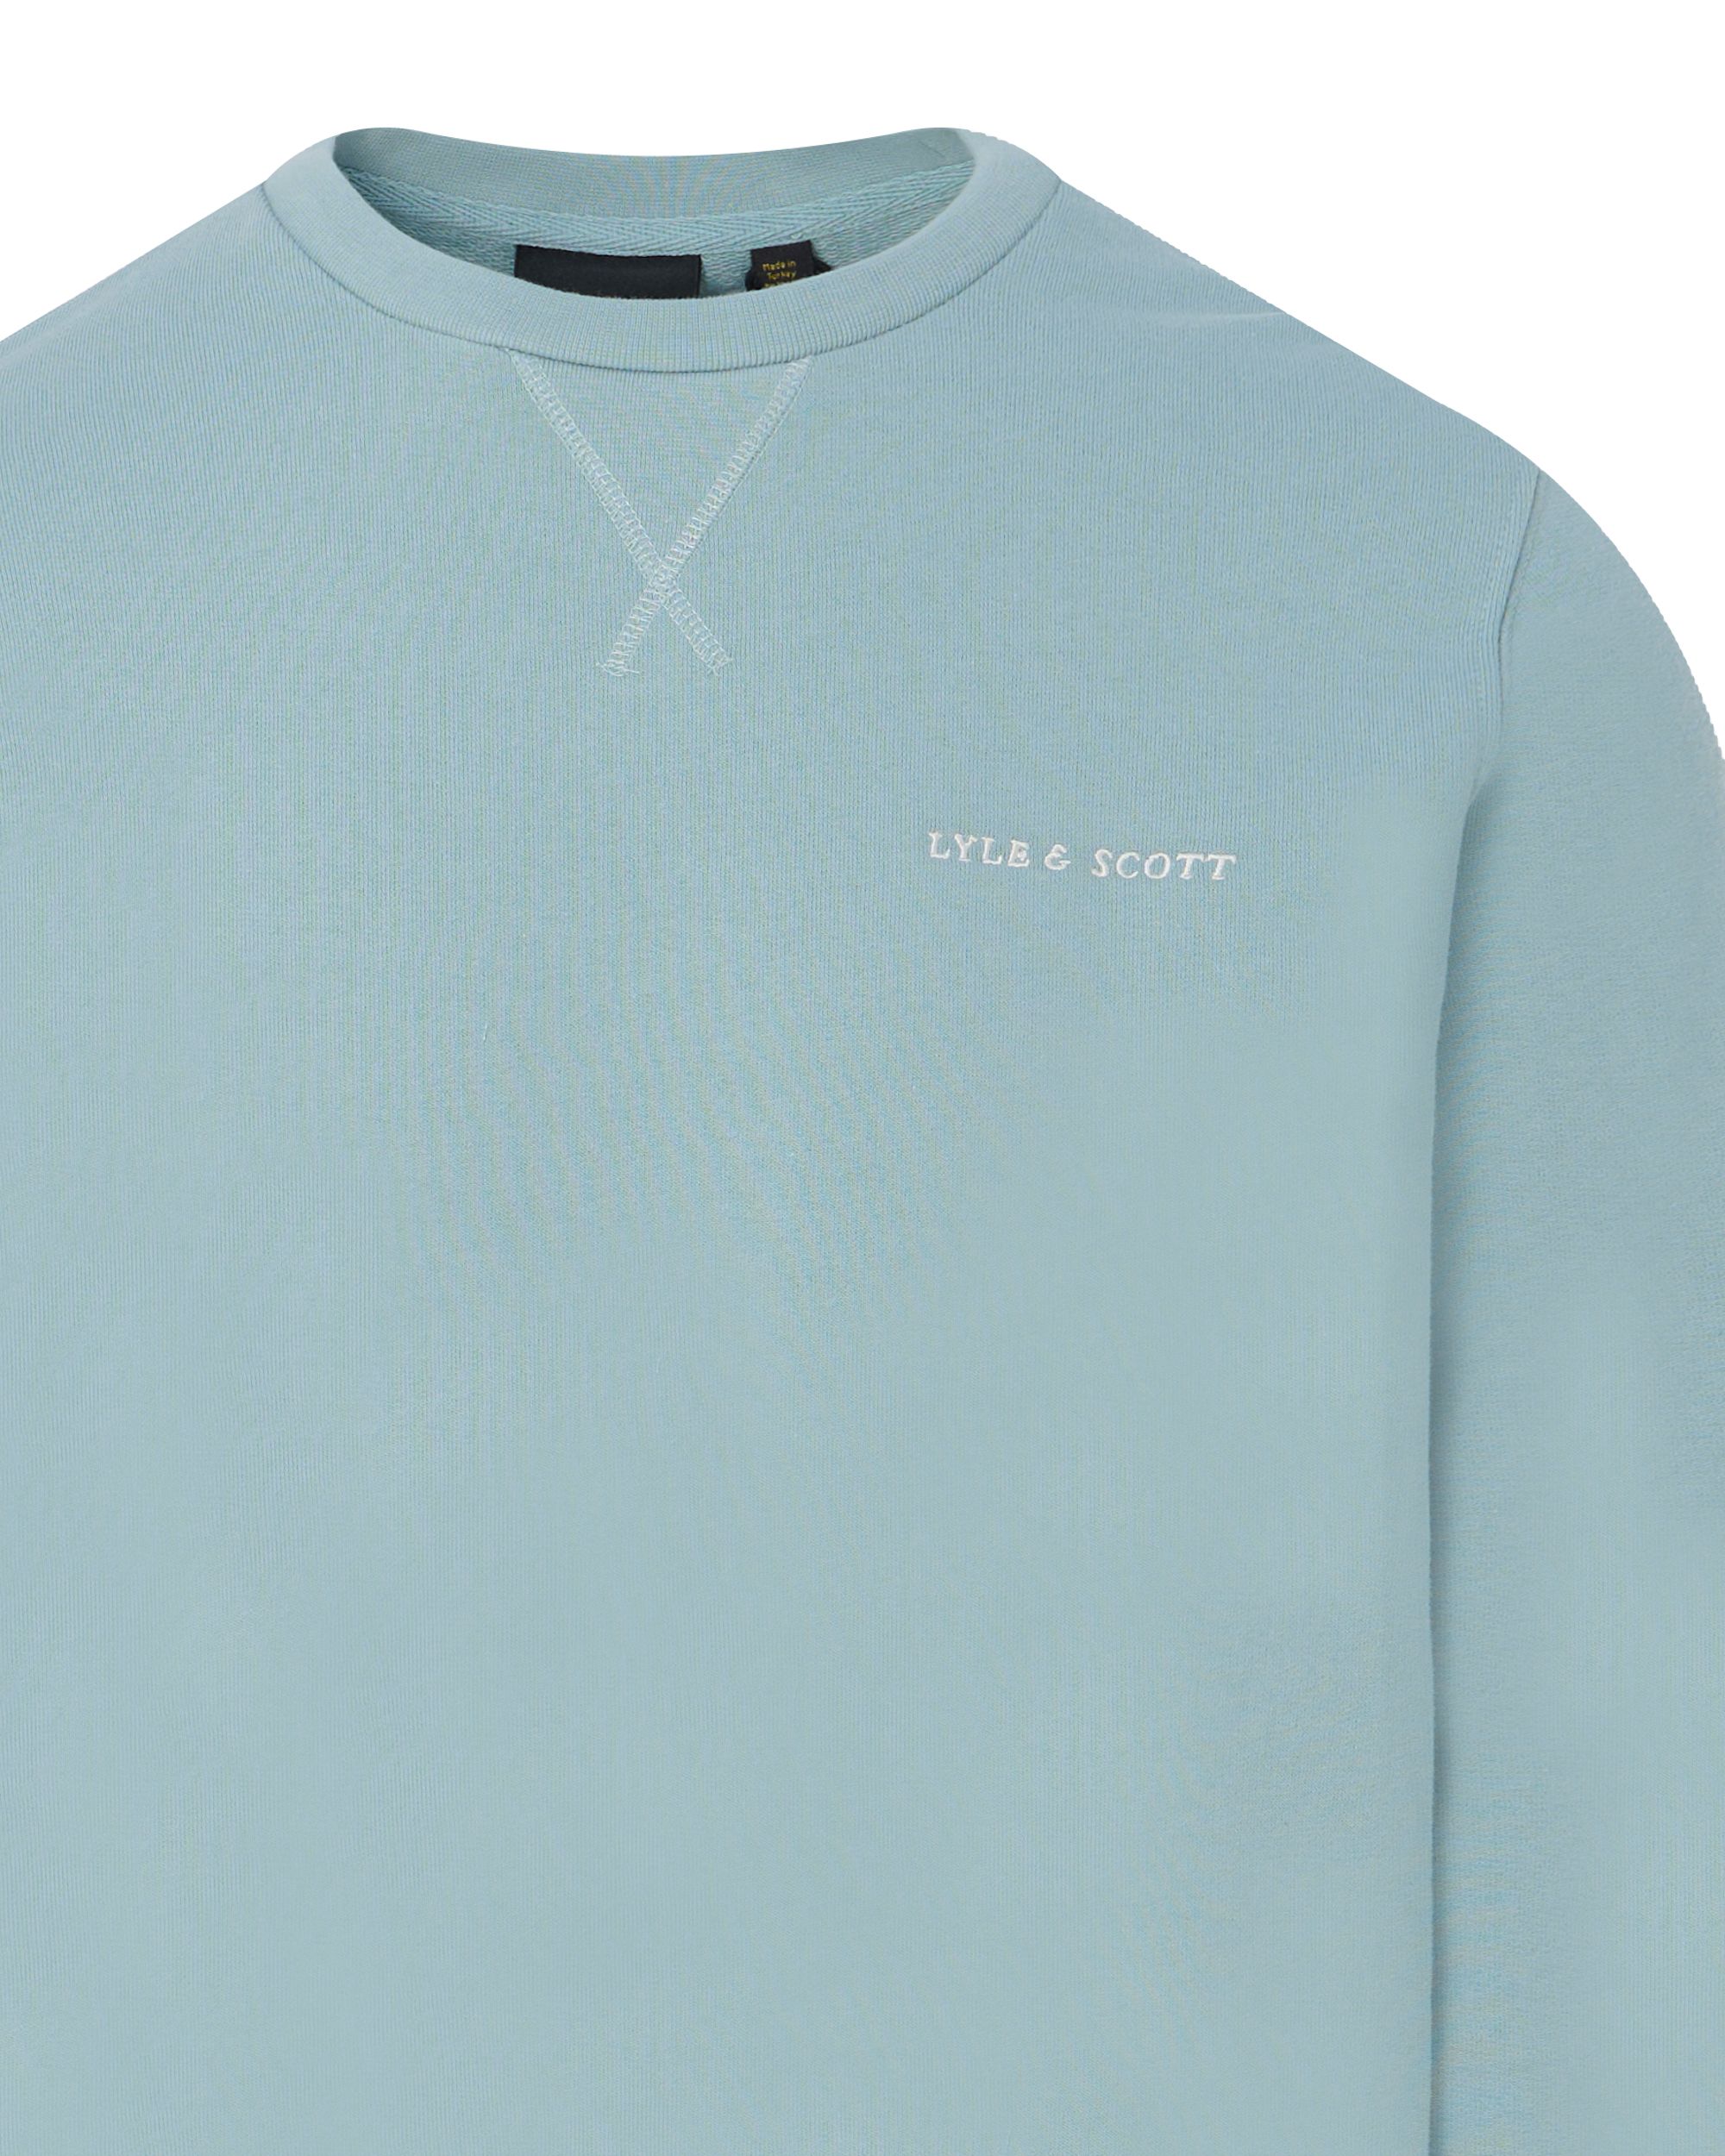 Lyle & Scott Sweater Donker blauw 092224-001-L